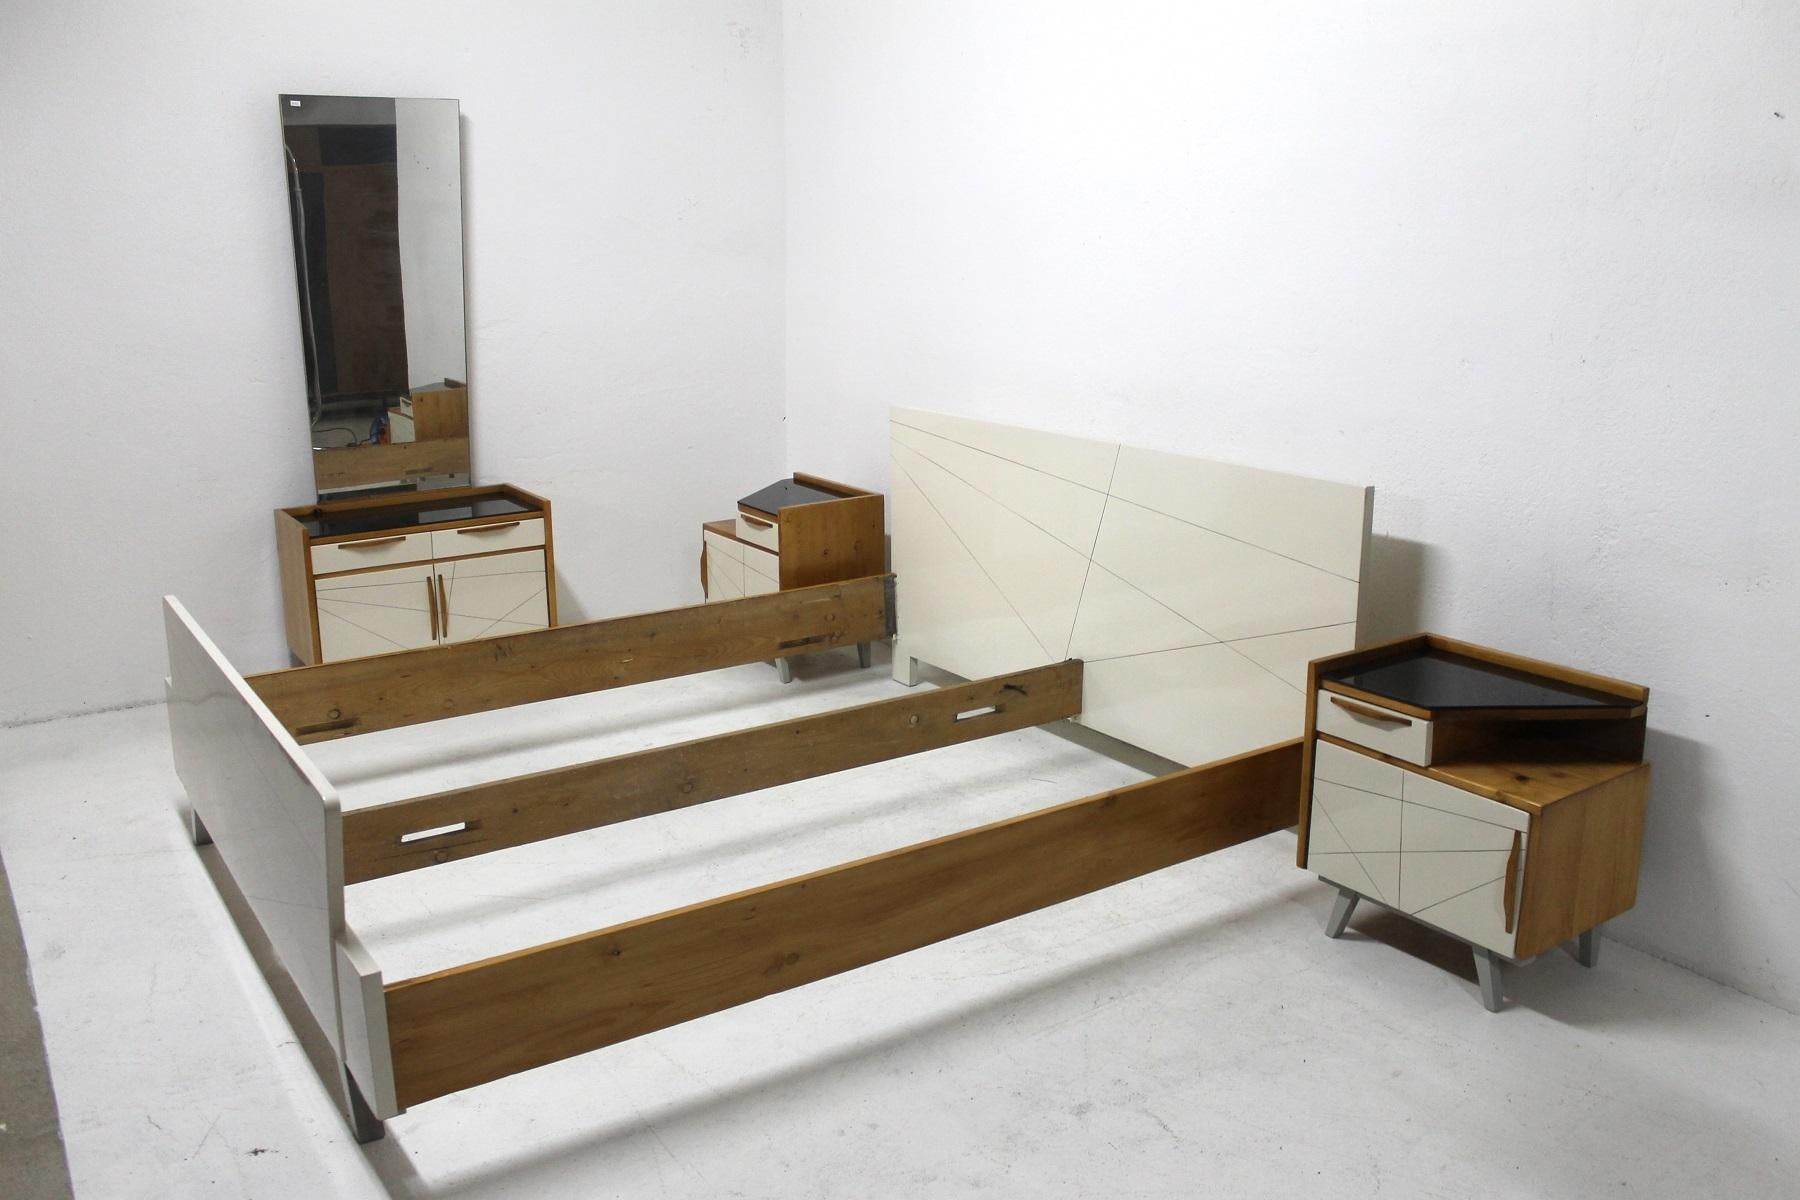 Midcentury Bedroom Set, Expo 58, Czechoslovakia (Tschechisch)